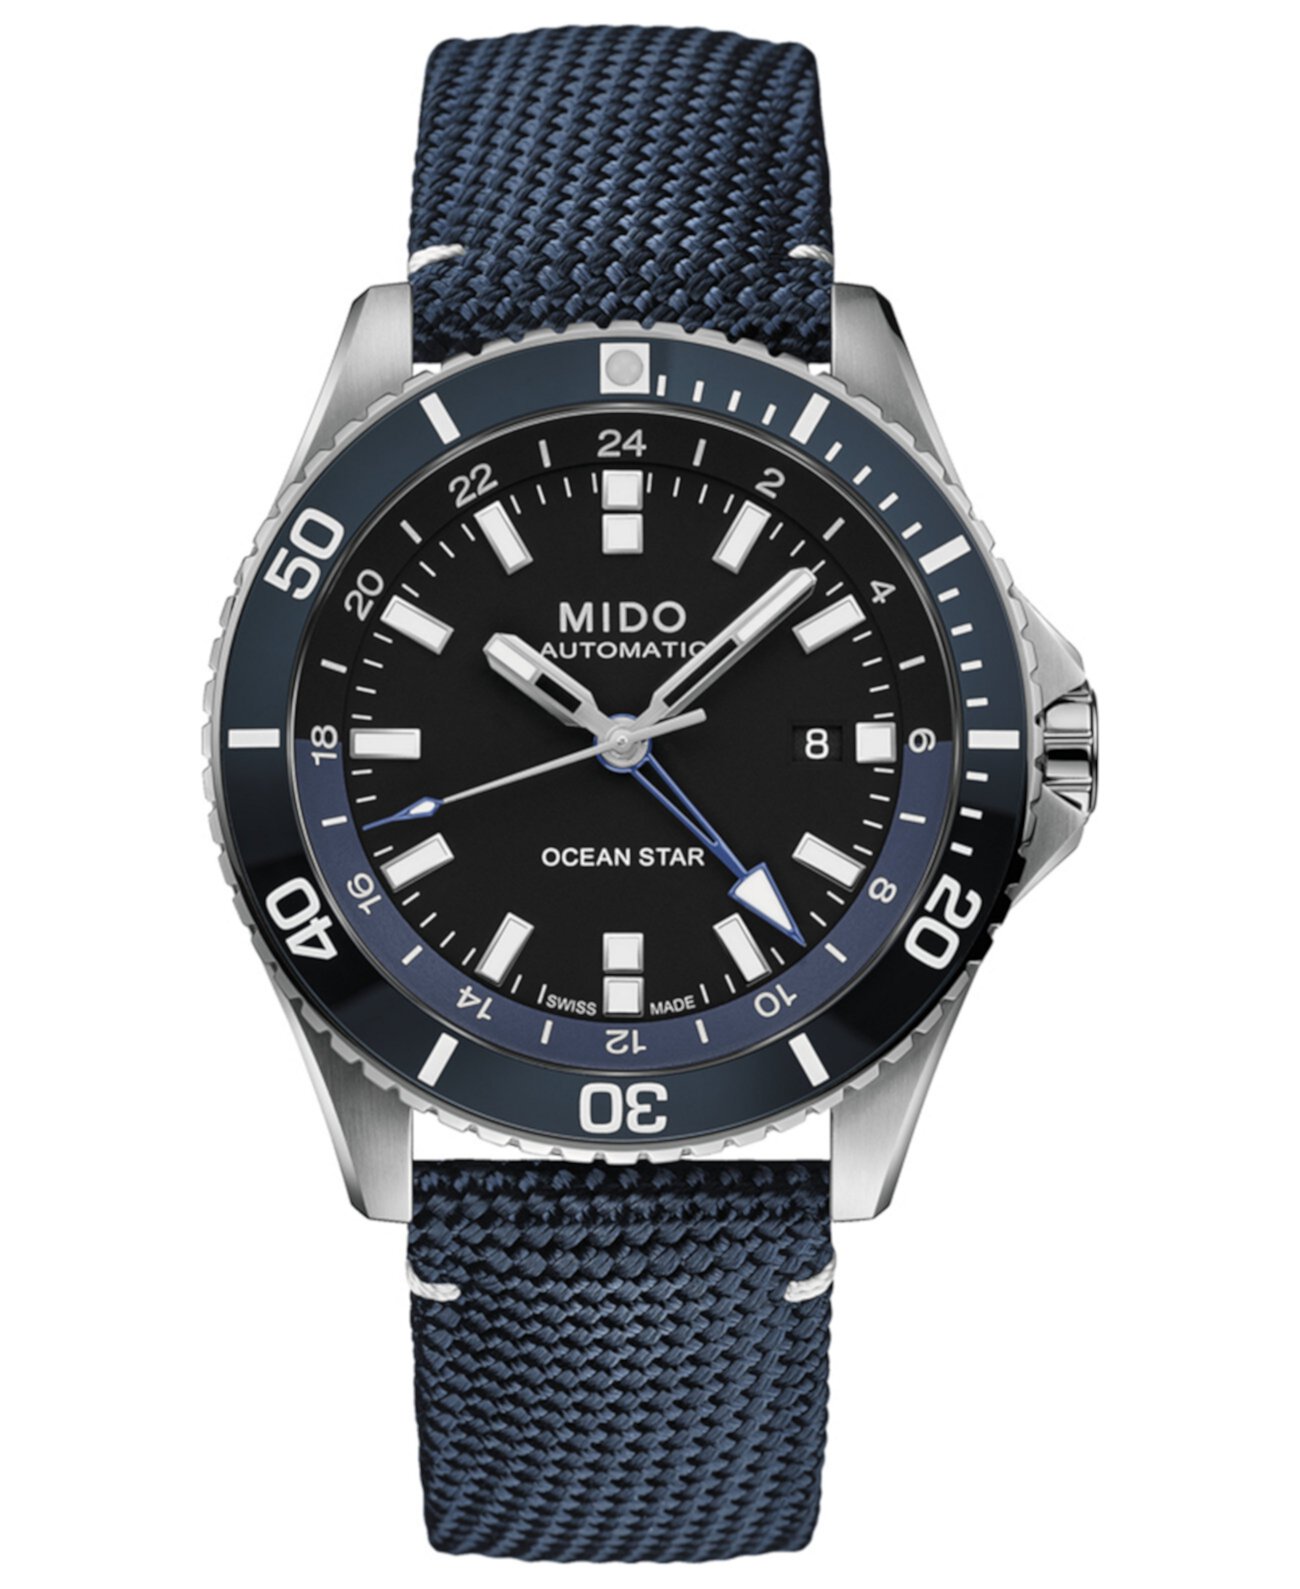 Мужские швейцарские автоматические часы Ocean Star GMT с синим тканевым ремешком, 44 мм MIDO